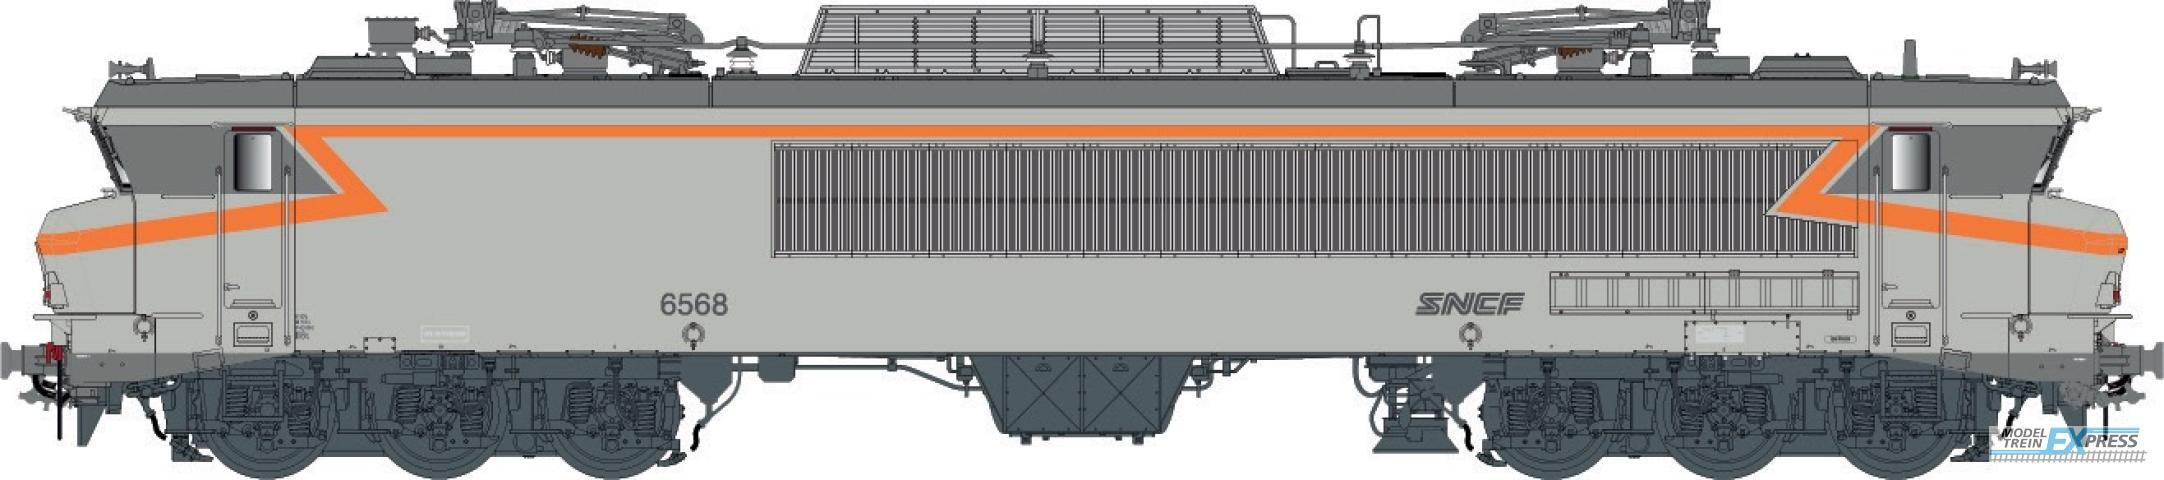 LS Models 10333 CC 6558, concrete gray, orange, noodle logo, Lyon-Mouche depot  /  Ep. IV-V  /  SNCF  /  HO  /  DC  /  1 P.